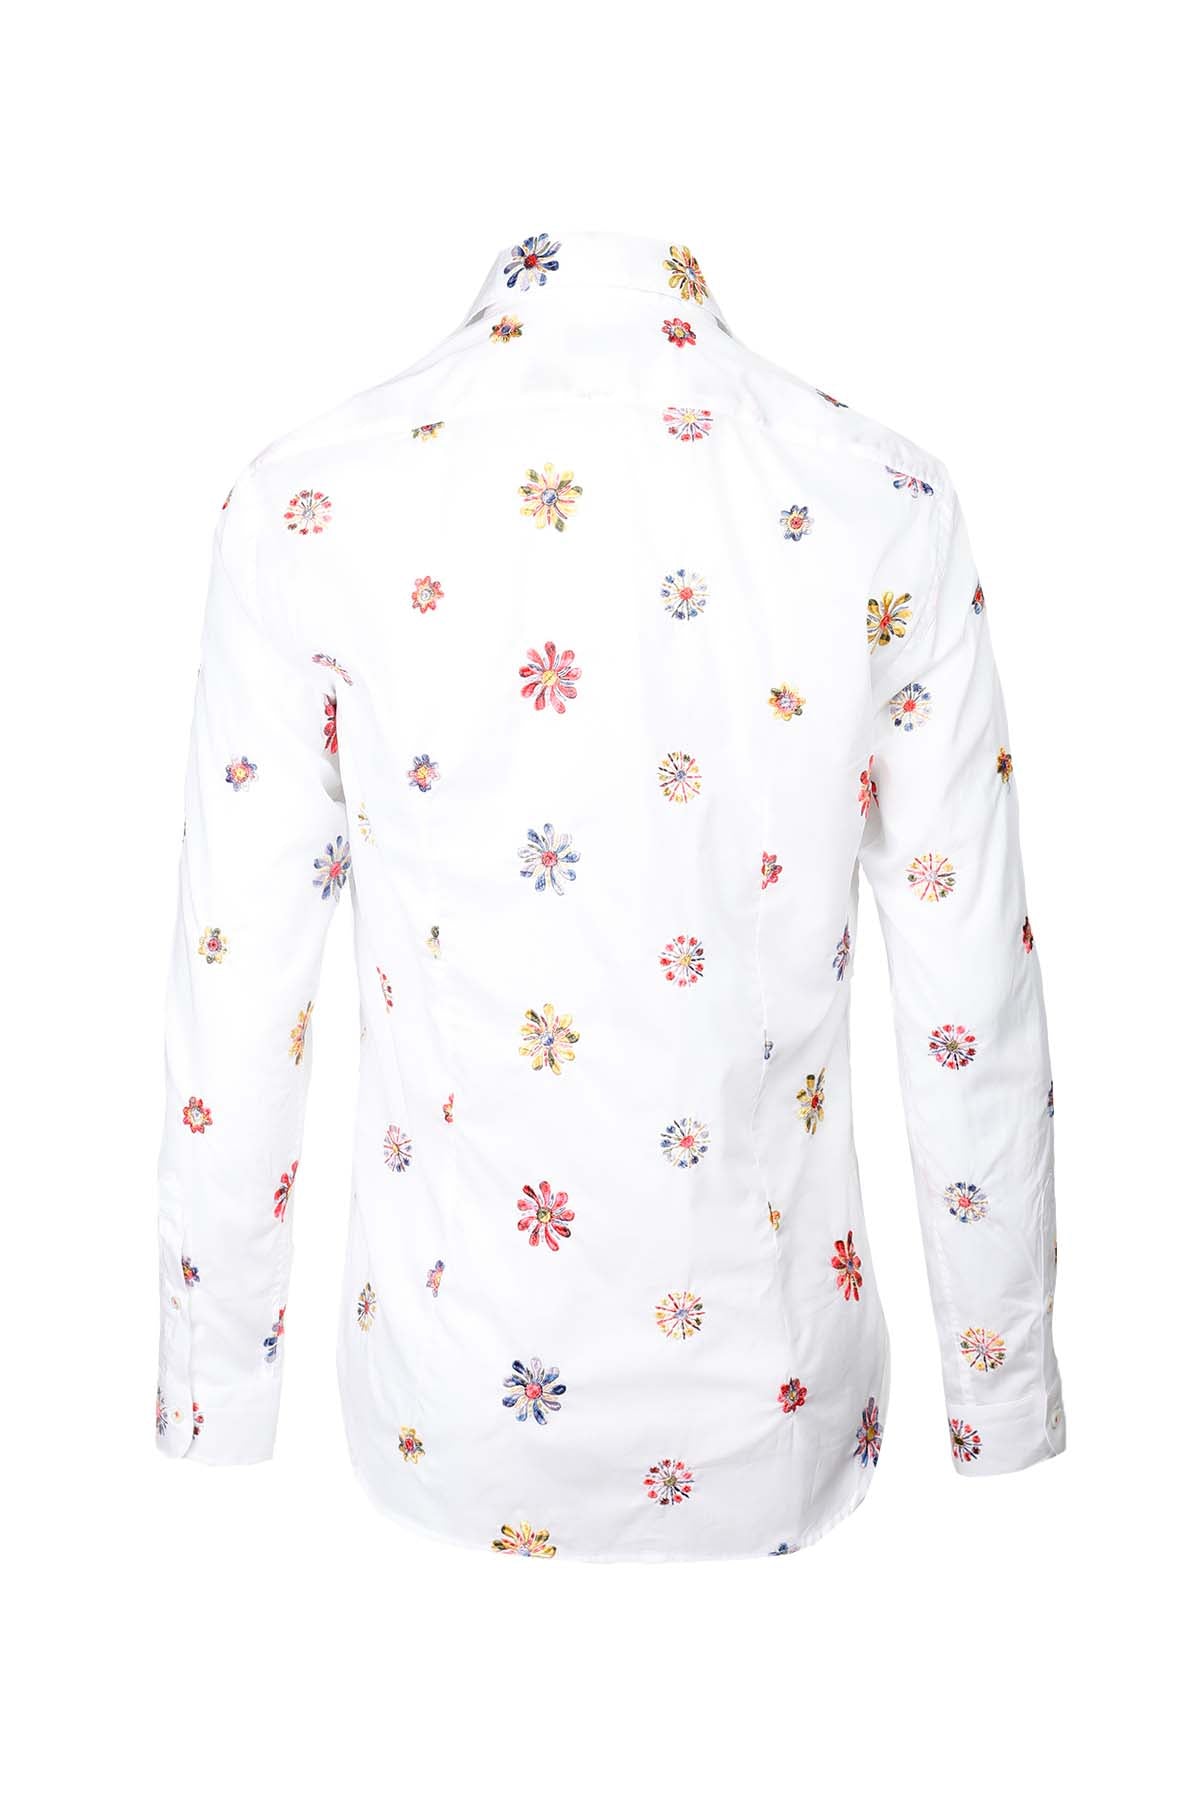 Poggianti İtalyan Yaka Çiçekli Nakışlı Firenze Gömlek-Libas Trendy Fashion Store